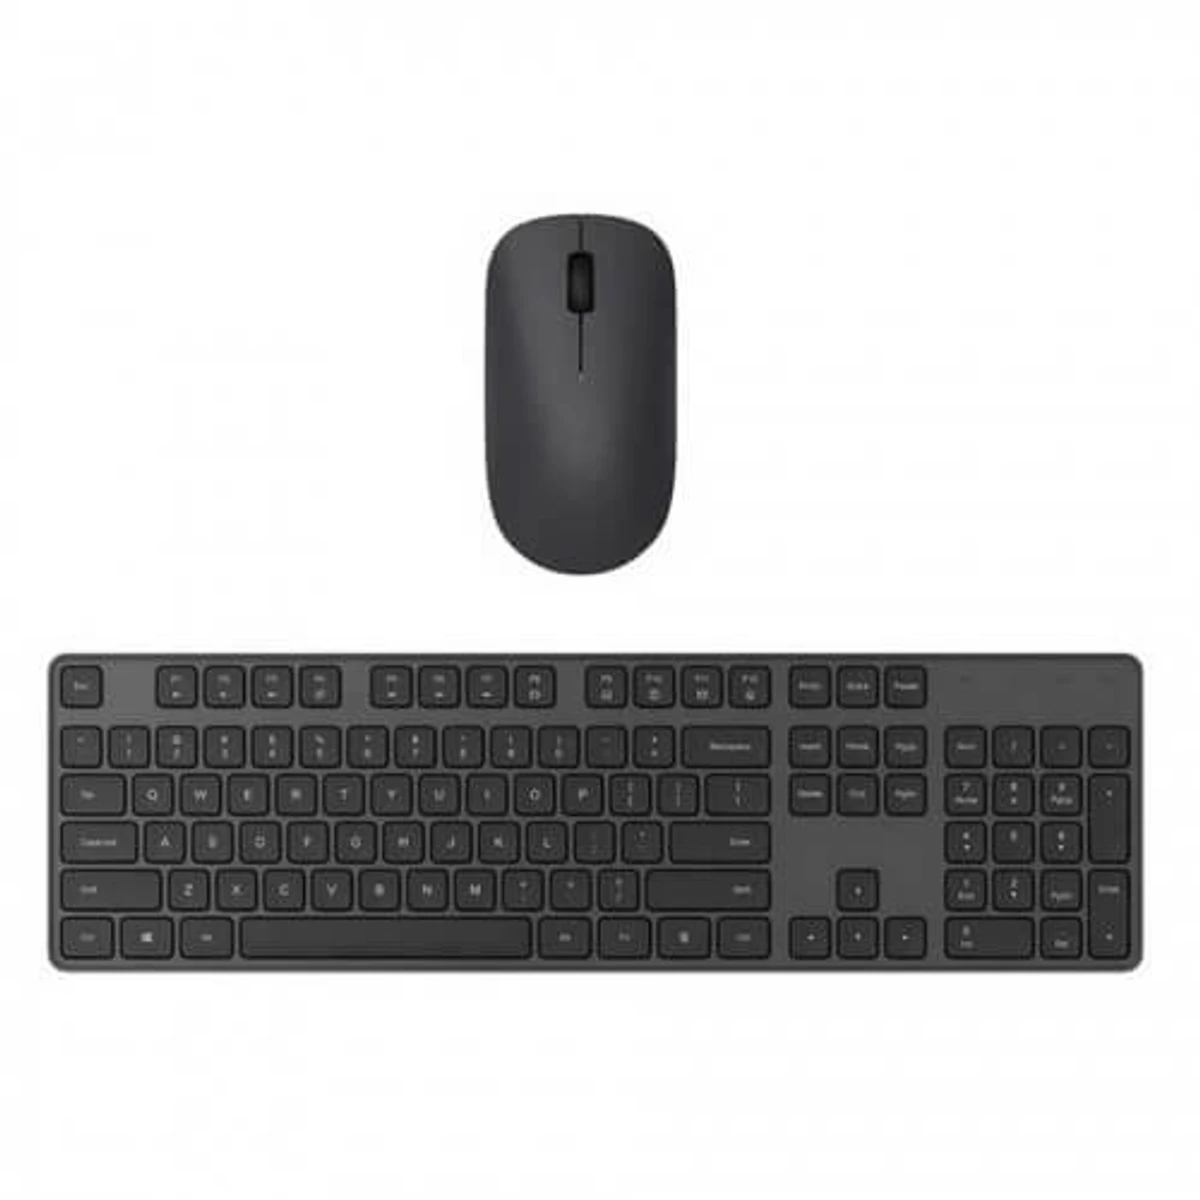 Xiaomi Mi Wireless Wireless Keyboard and Mouse Combo Set